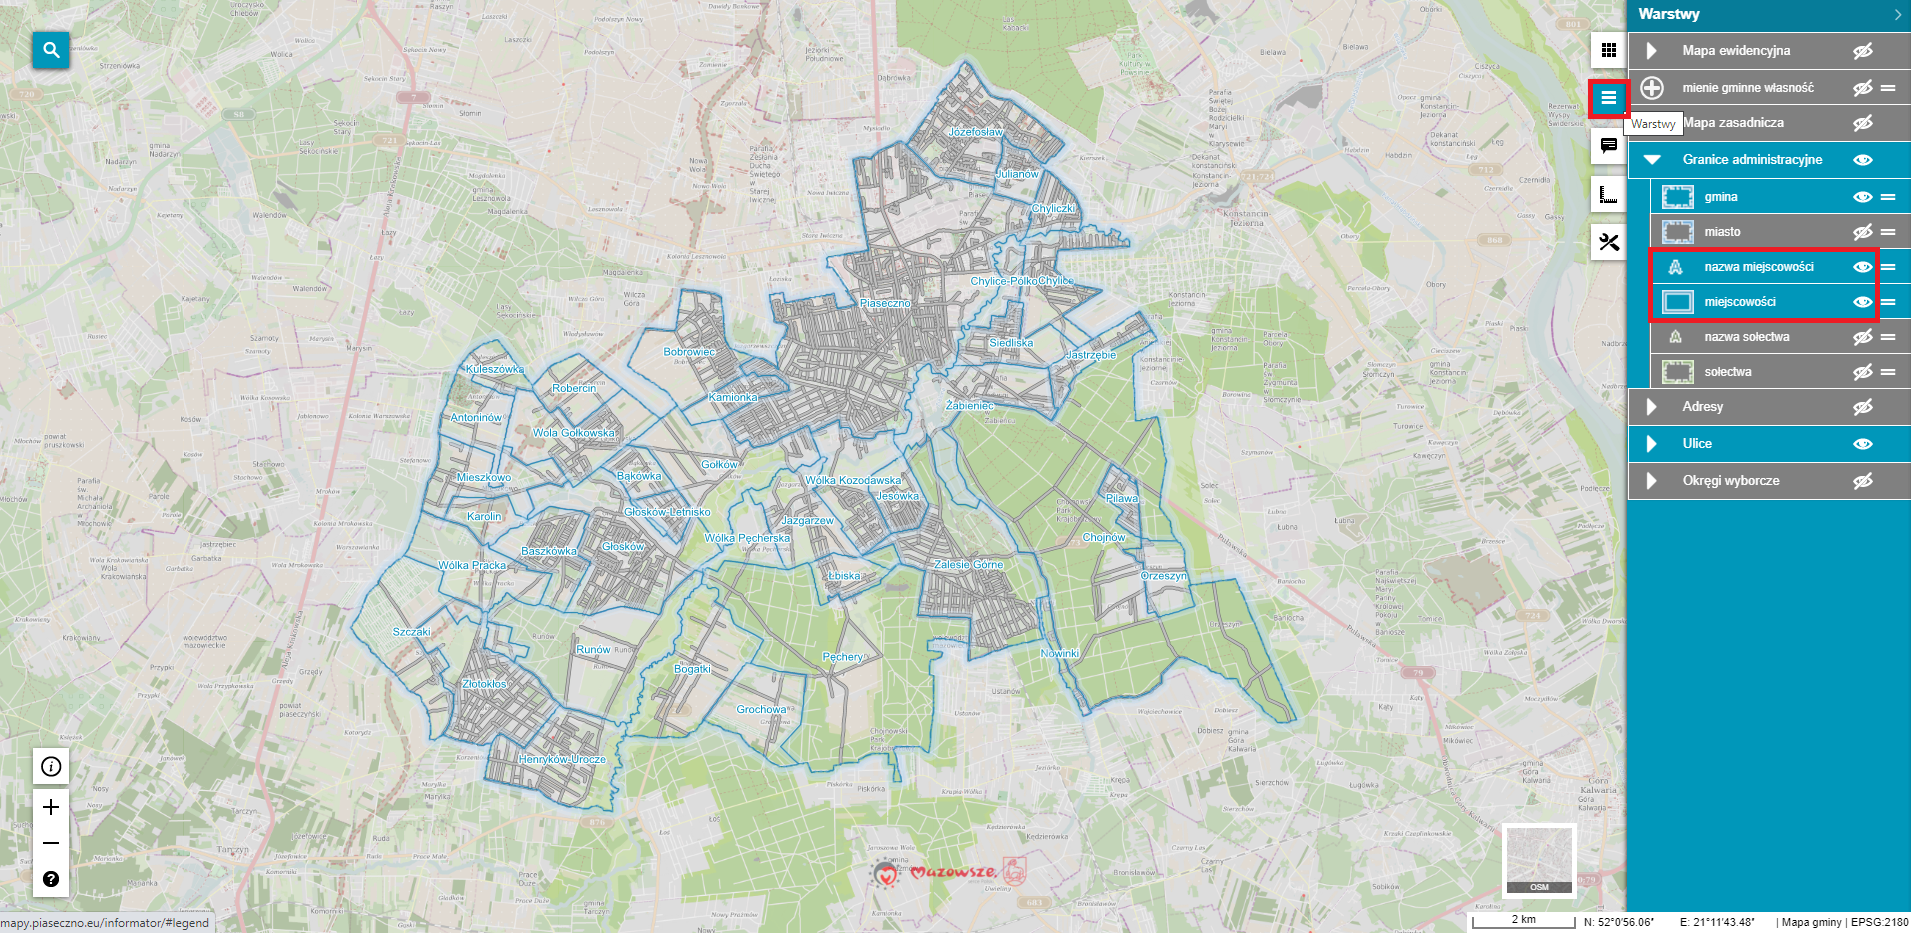 Zrzut ekranu mapy.piaseczno.eu/informator Mapa sołectw gminy Piaseczno z granicami administracyjnymi